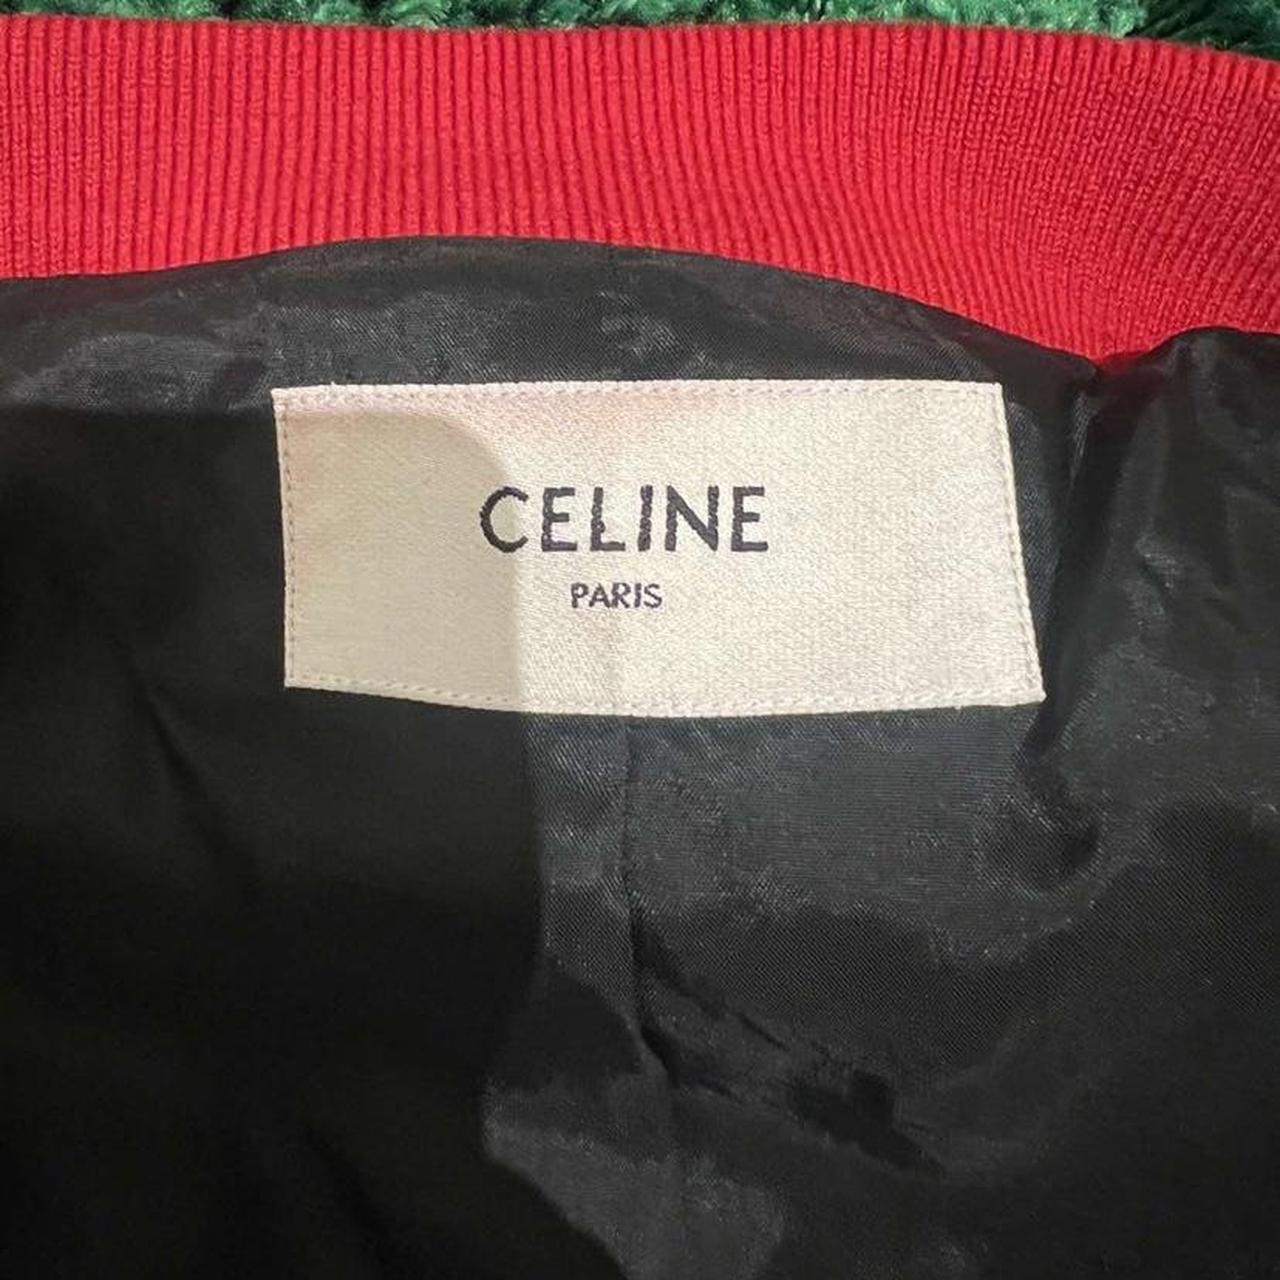 More photos including label… Celine jacket 100%... - Depop